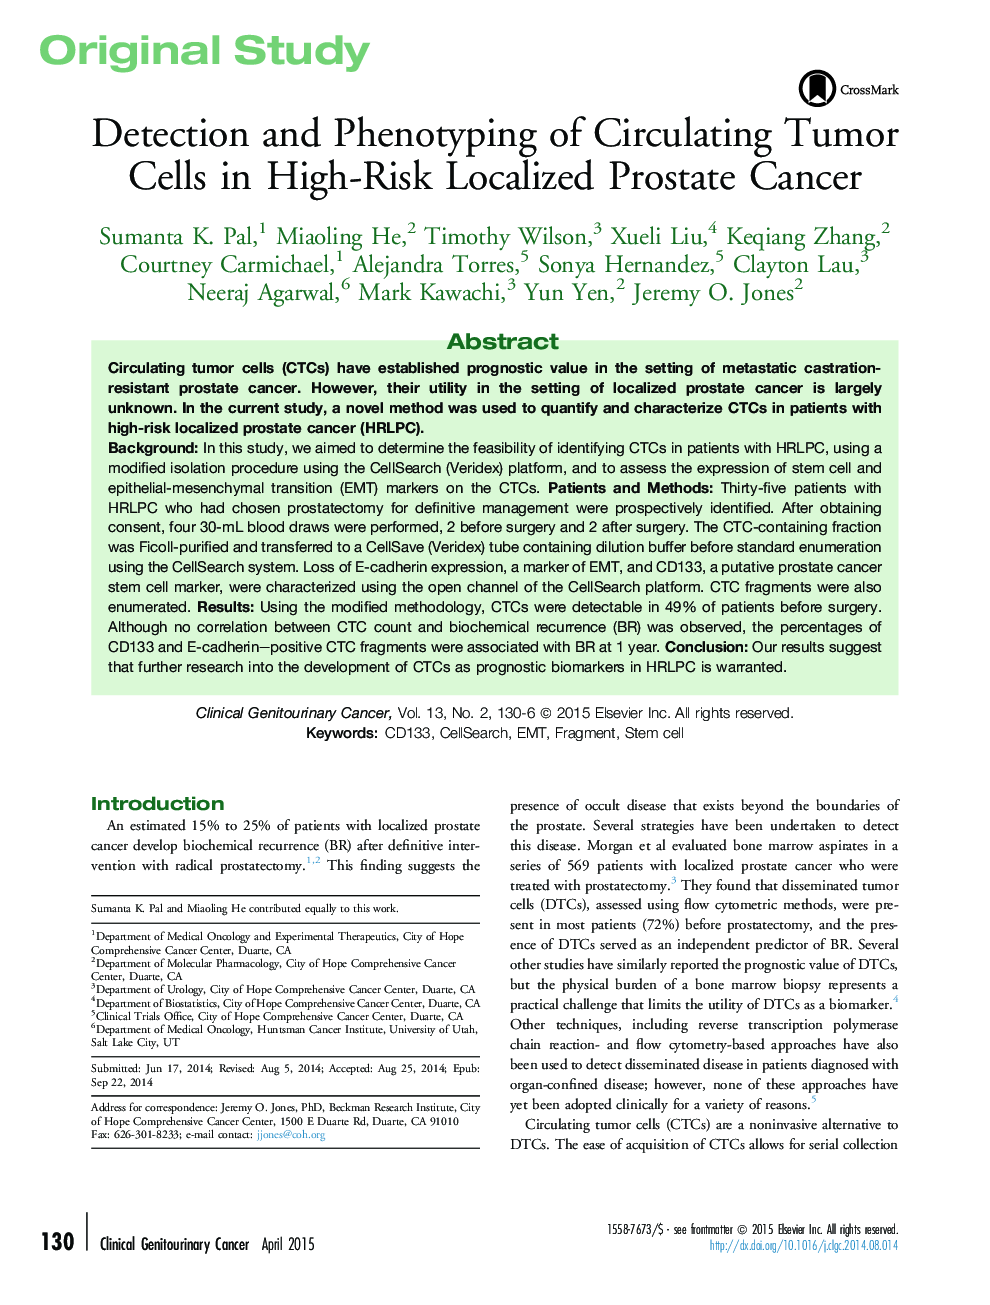 تشخیص و فنوتیپ سلول های تومور در سرطان پروستات محلی خطرناک است 